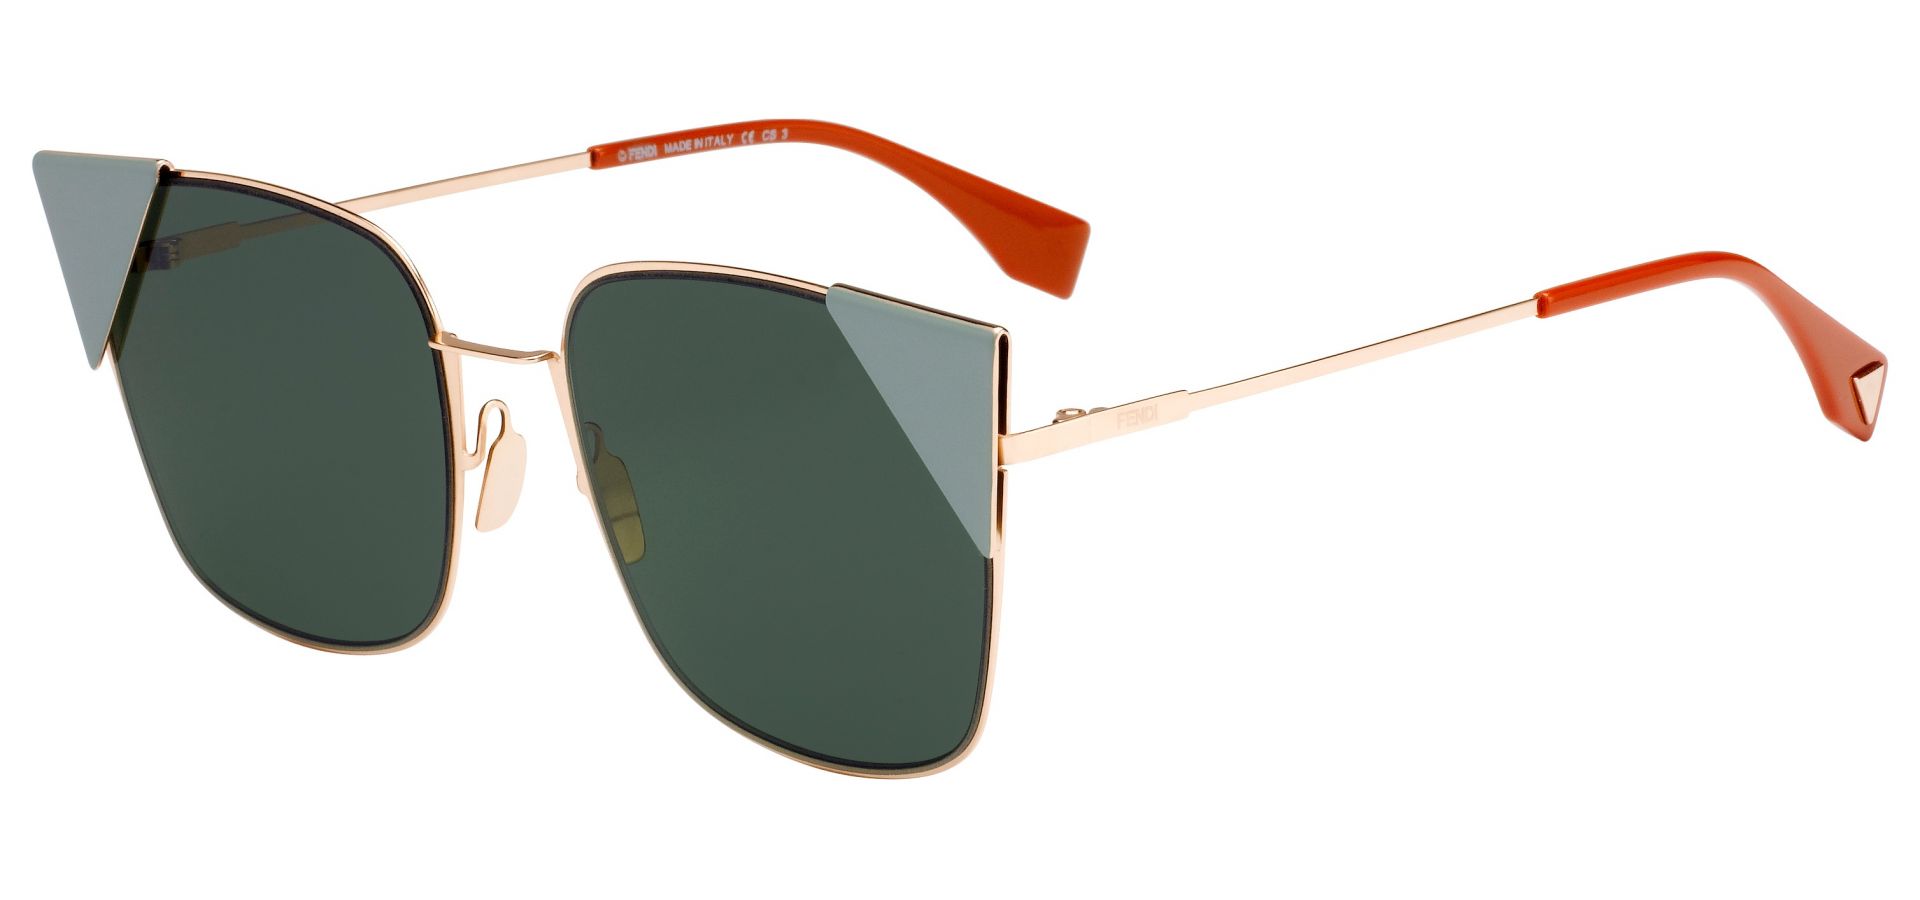 Sunčane naočale Fendi FENDI 0191/S: Boja: green, Veličina: 55-19-140, Spol: ženske, Materijal: metal